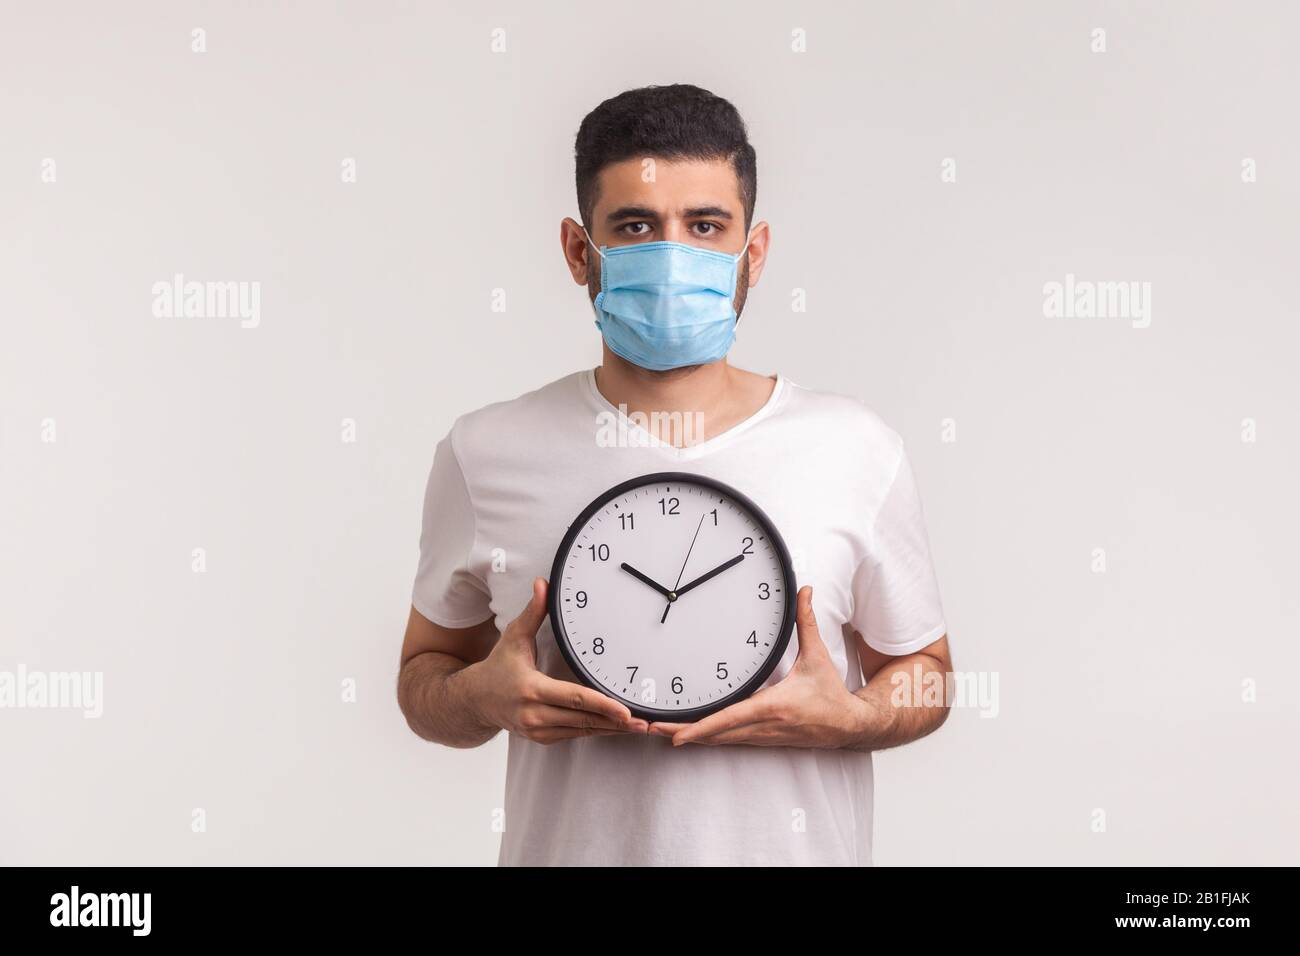 Tempo per fermare il coronavirus. Uomo in maschera igienica protettiva che tiene orologio, avvertimento di nuova epidemia di virus, quarantena e rischio durante il periodo di incubazione Foto Stock